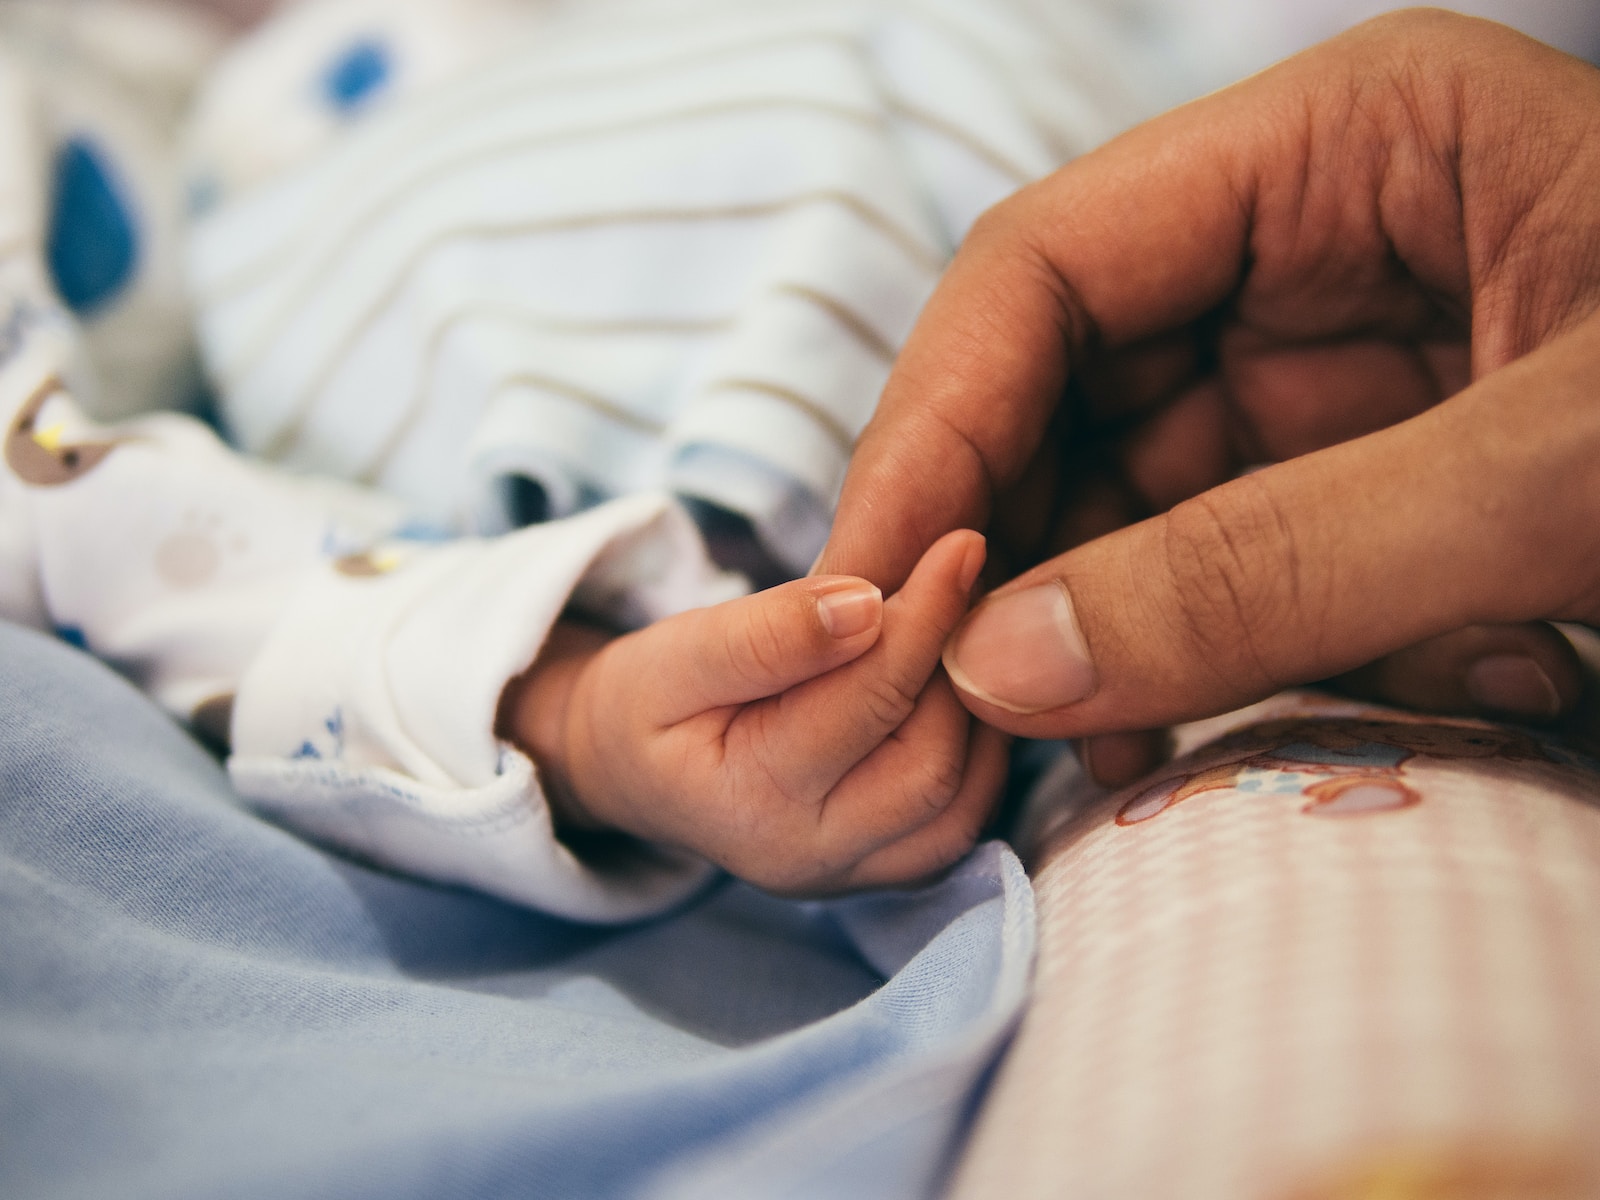 רשלנות רפואית בלידה או אחרי לידה - את מי תובעים?